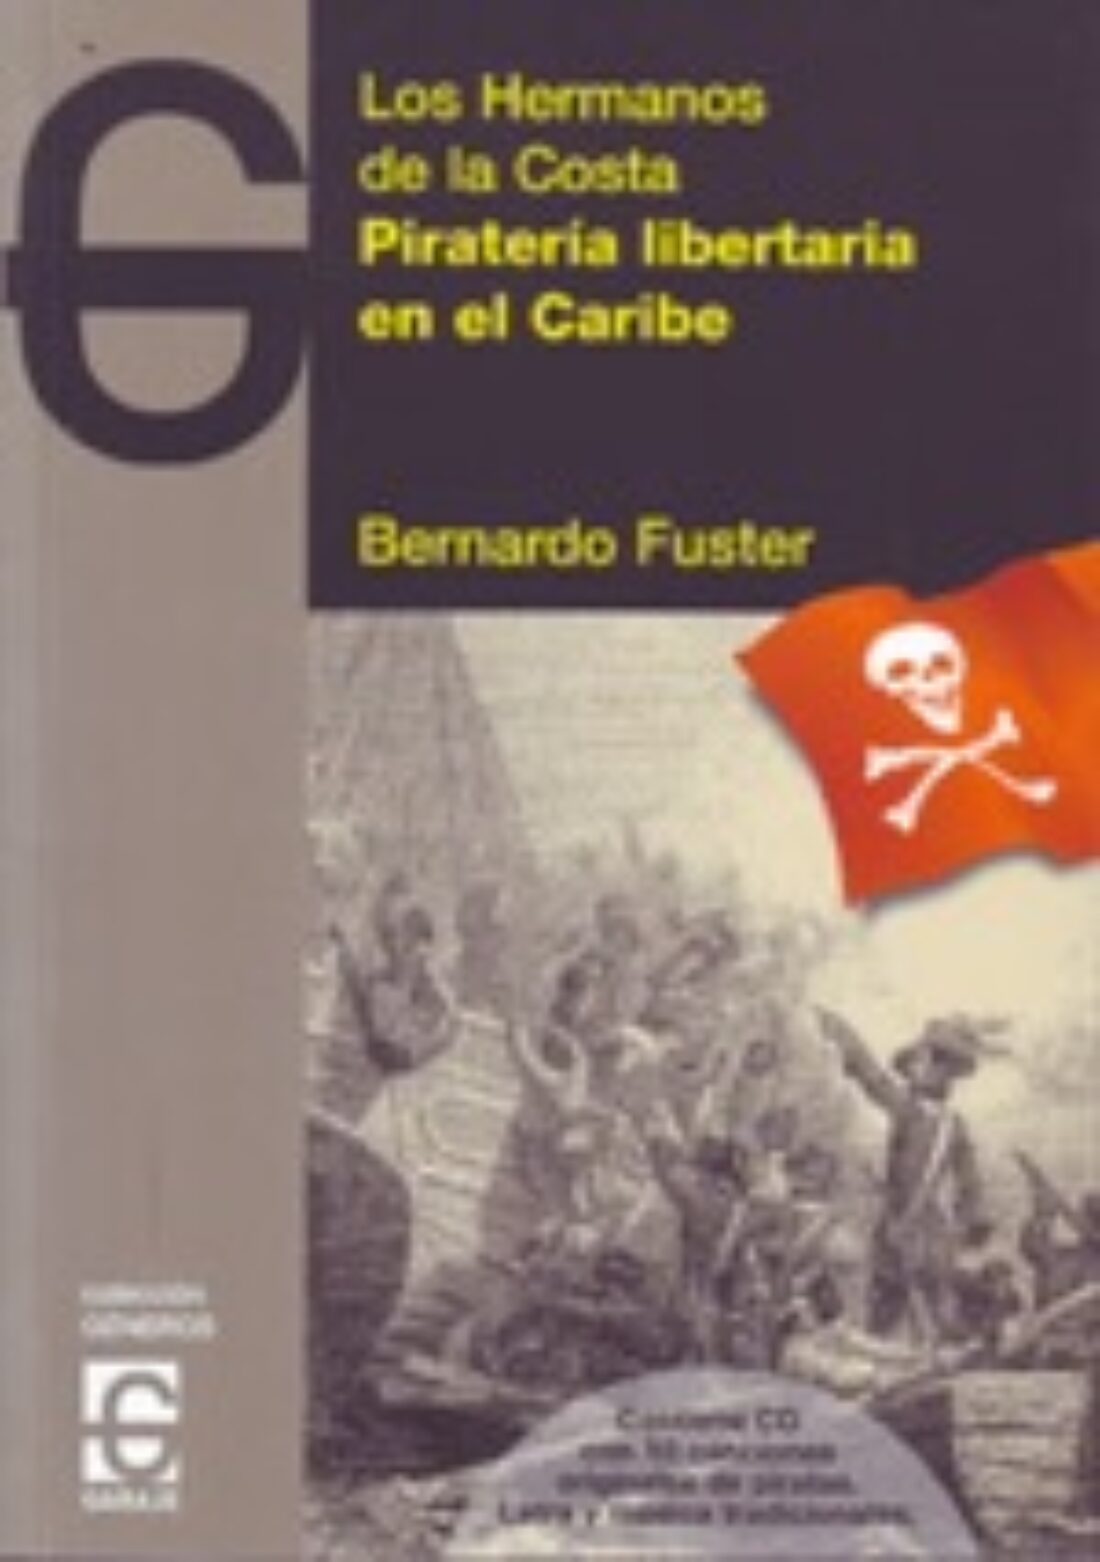 6 noviembre, Madrid : Piratería libertaria en el Caribe. Los hermanos de la costa